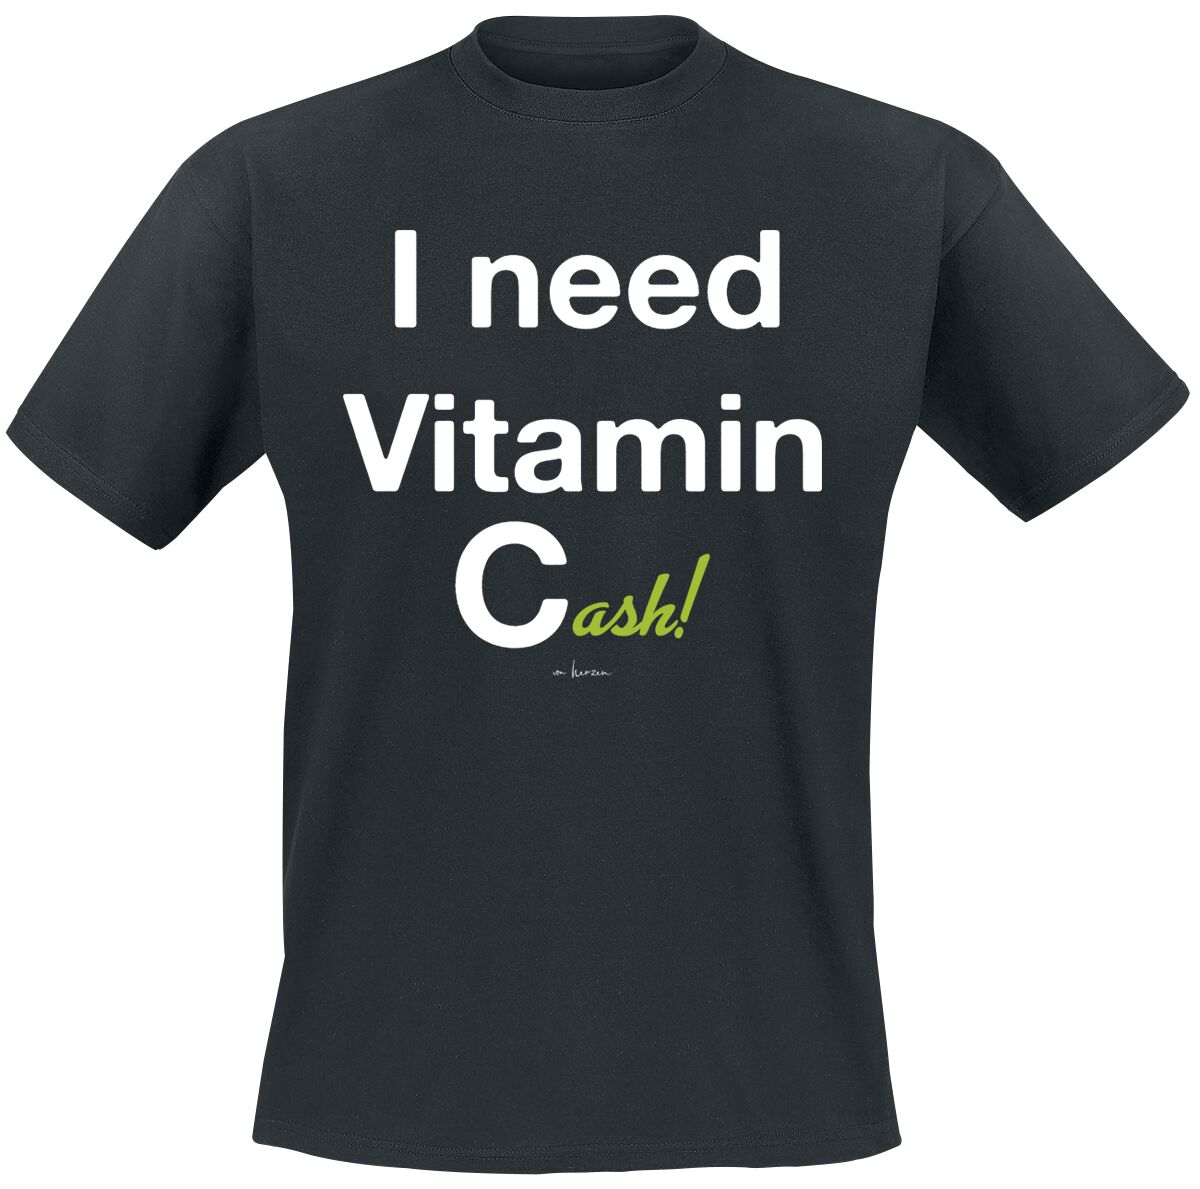 Sprüche T-Shirt - I Need Vitamin Cash! - M bis 3XL - für Männer - Größe 3XL - schwarz